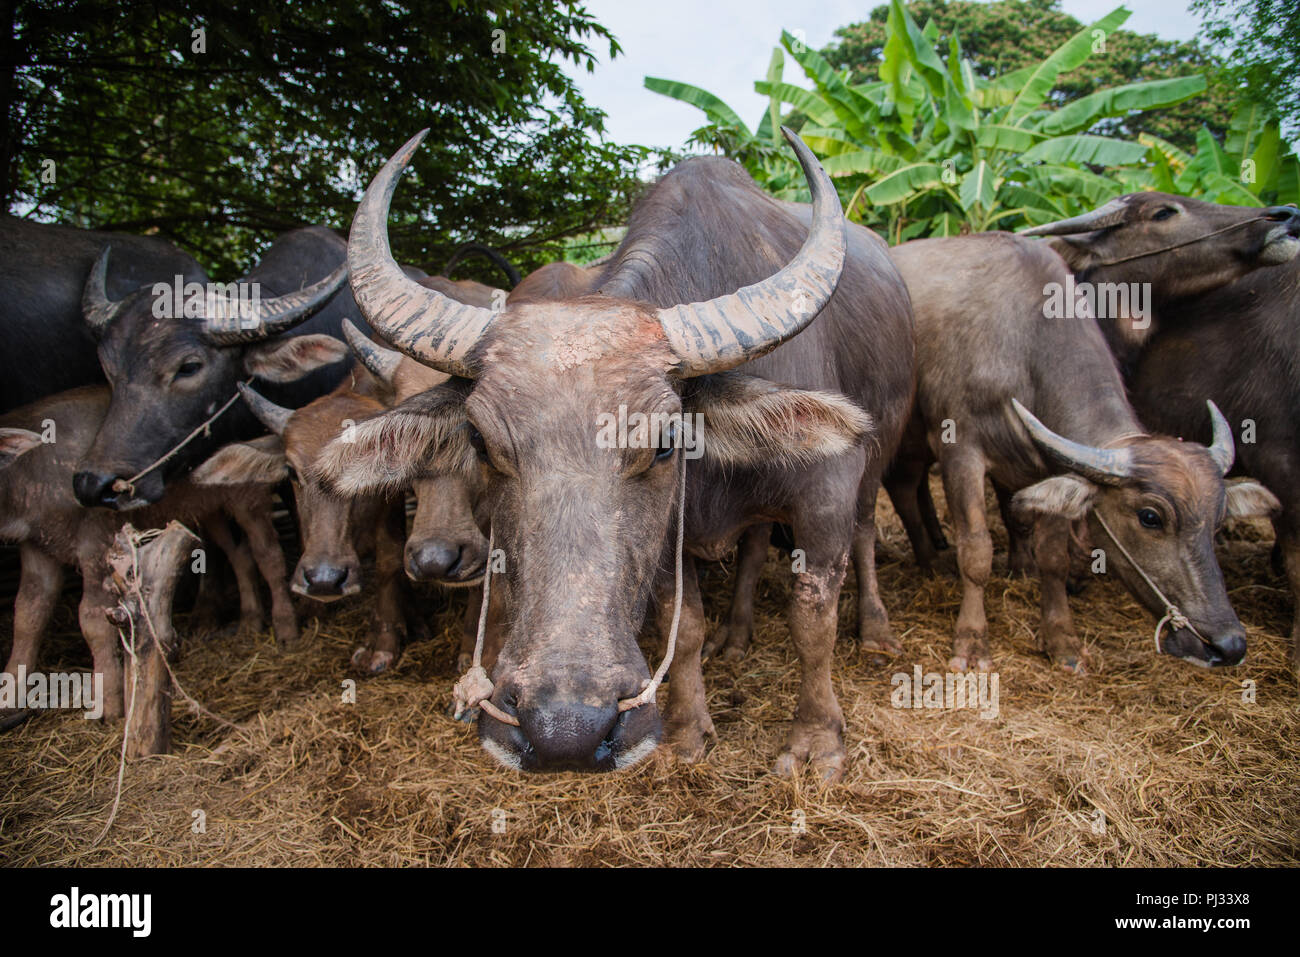 thailand buffalo in my farm Stock Photo